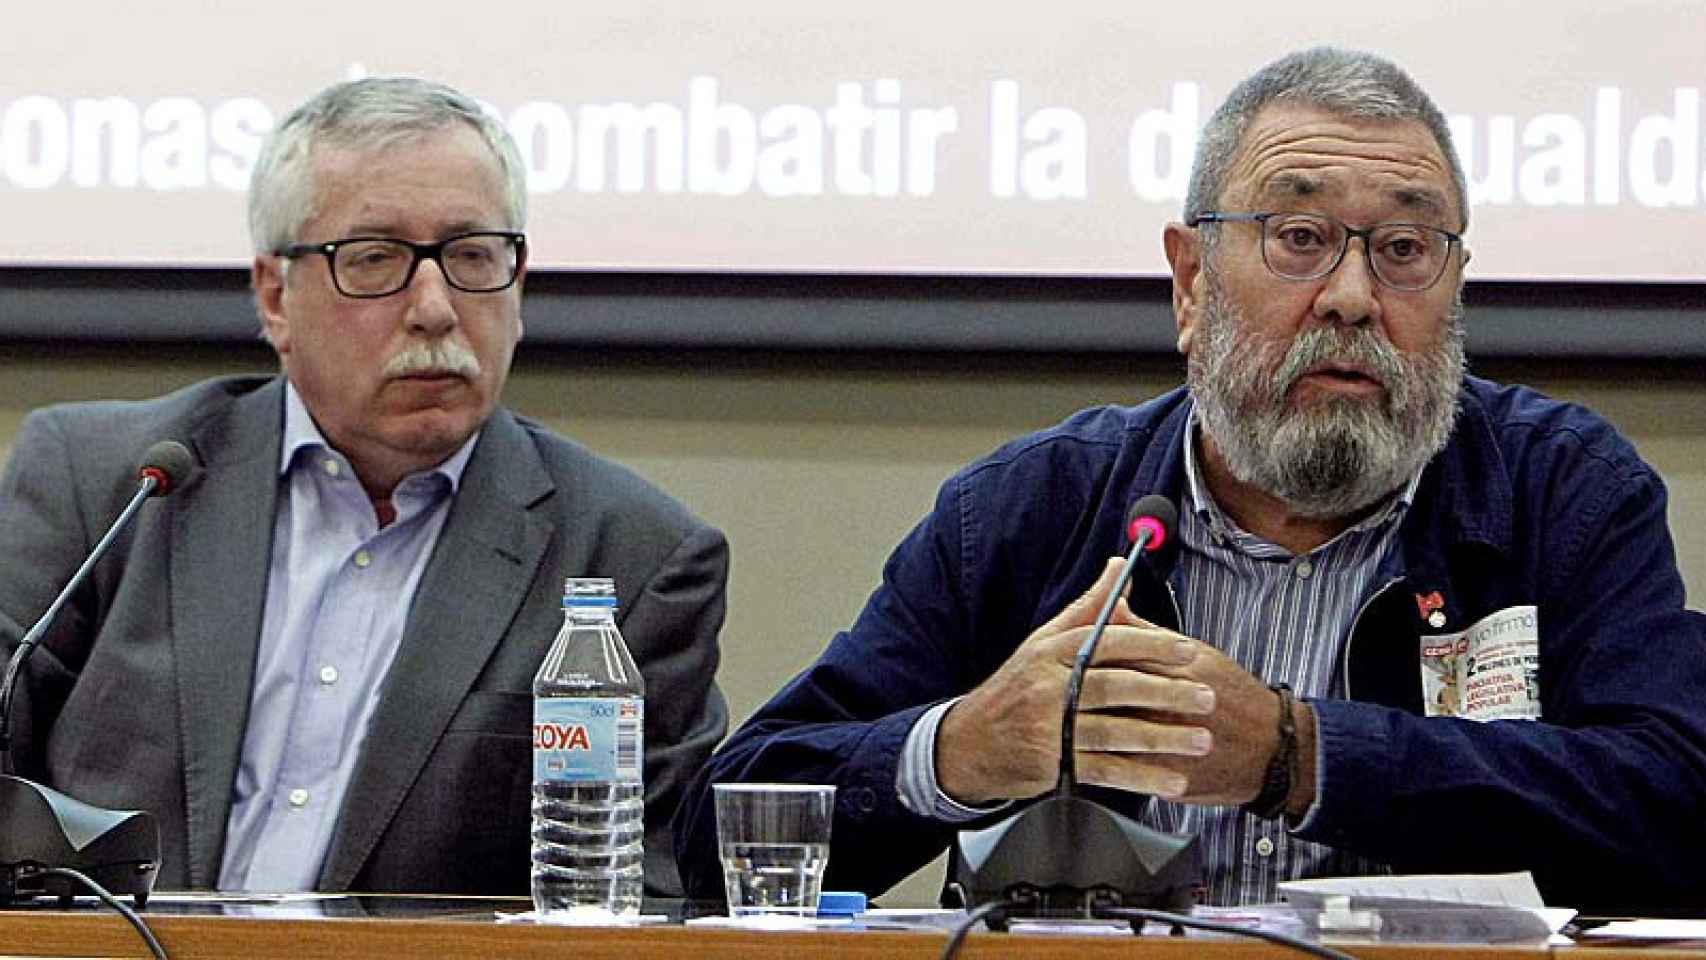 Los secretarios generales de CCOO, Ignacio Fernández Toxo, y de UGT, Cándido Méndez